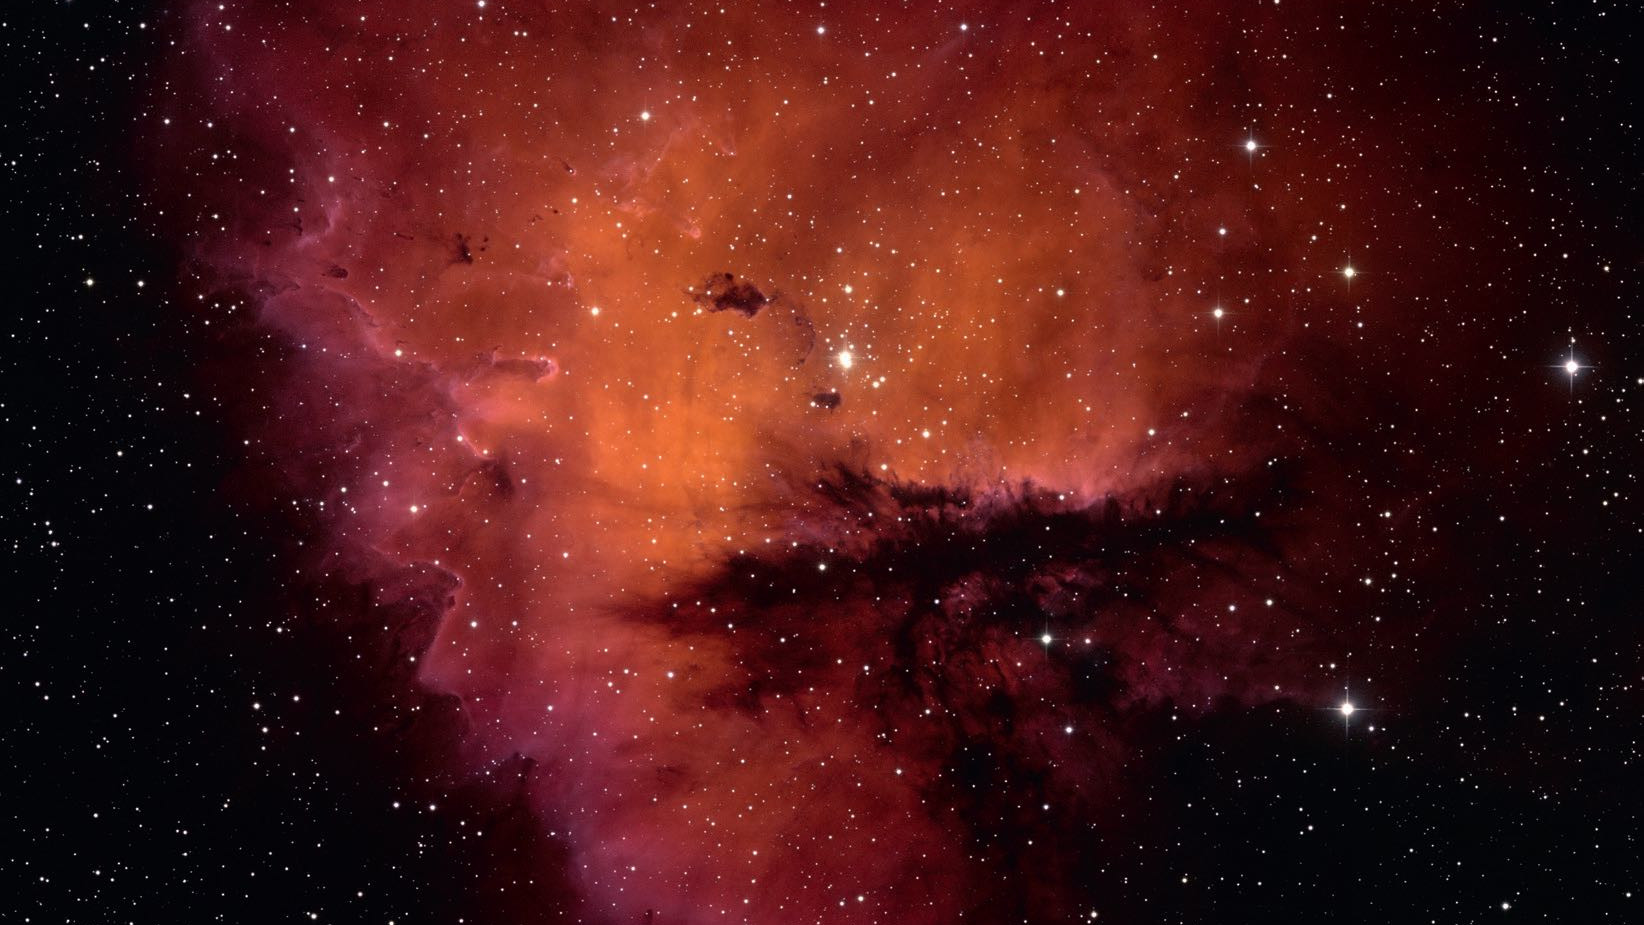 Nicht nur fotografisch, auch visuell erinnert die Form von NGC 281 an die Pacman-Figur. NSF/AURA/WIYN/T. Rector (University of Alaska)